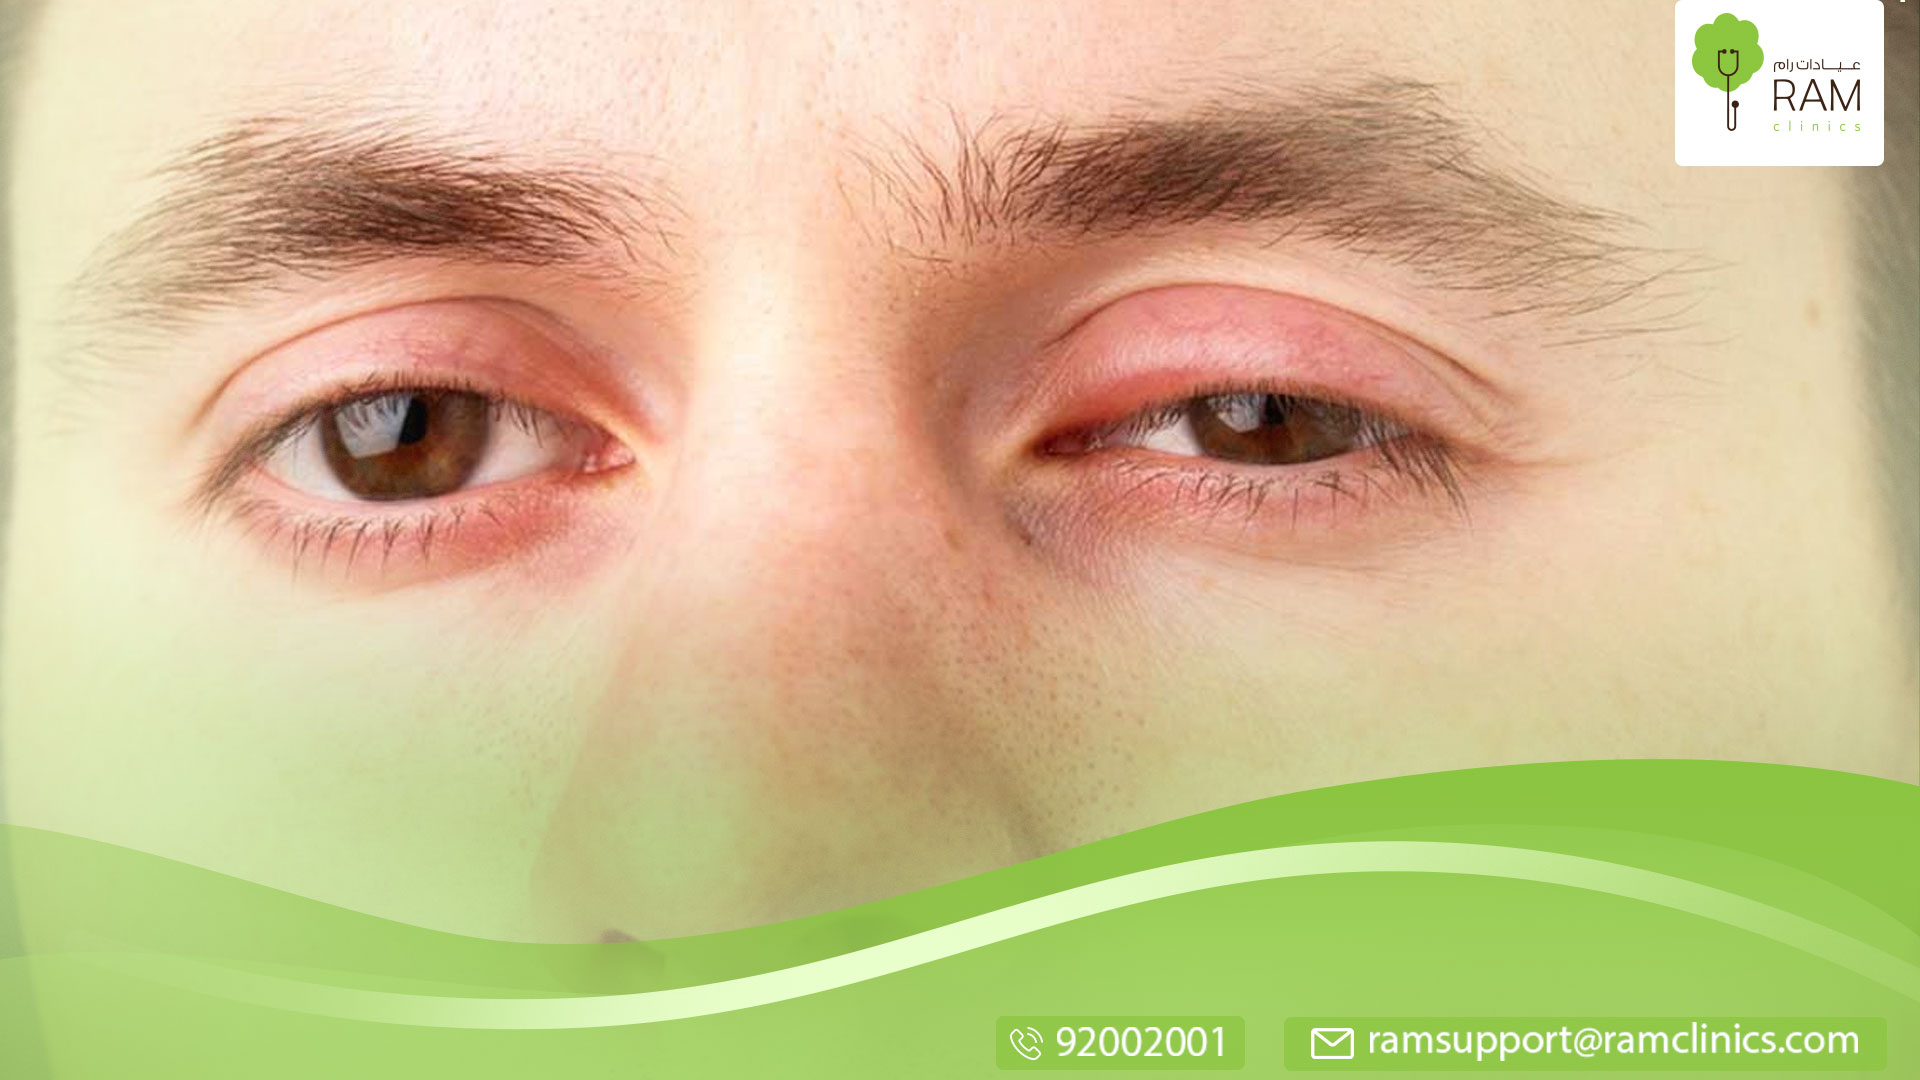 علاج انتفاخ جفن العين العلوي